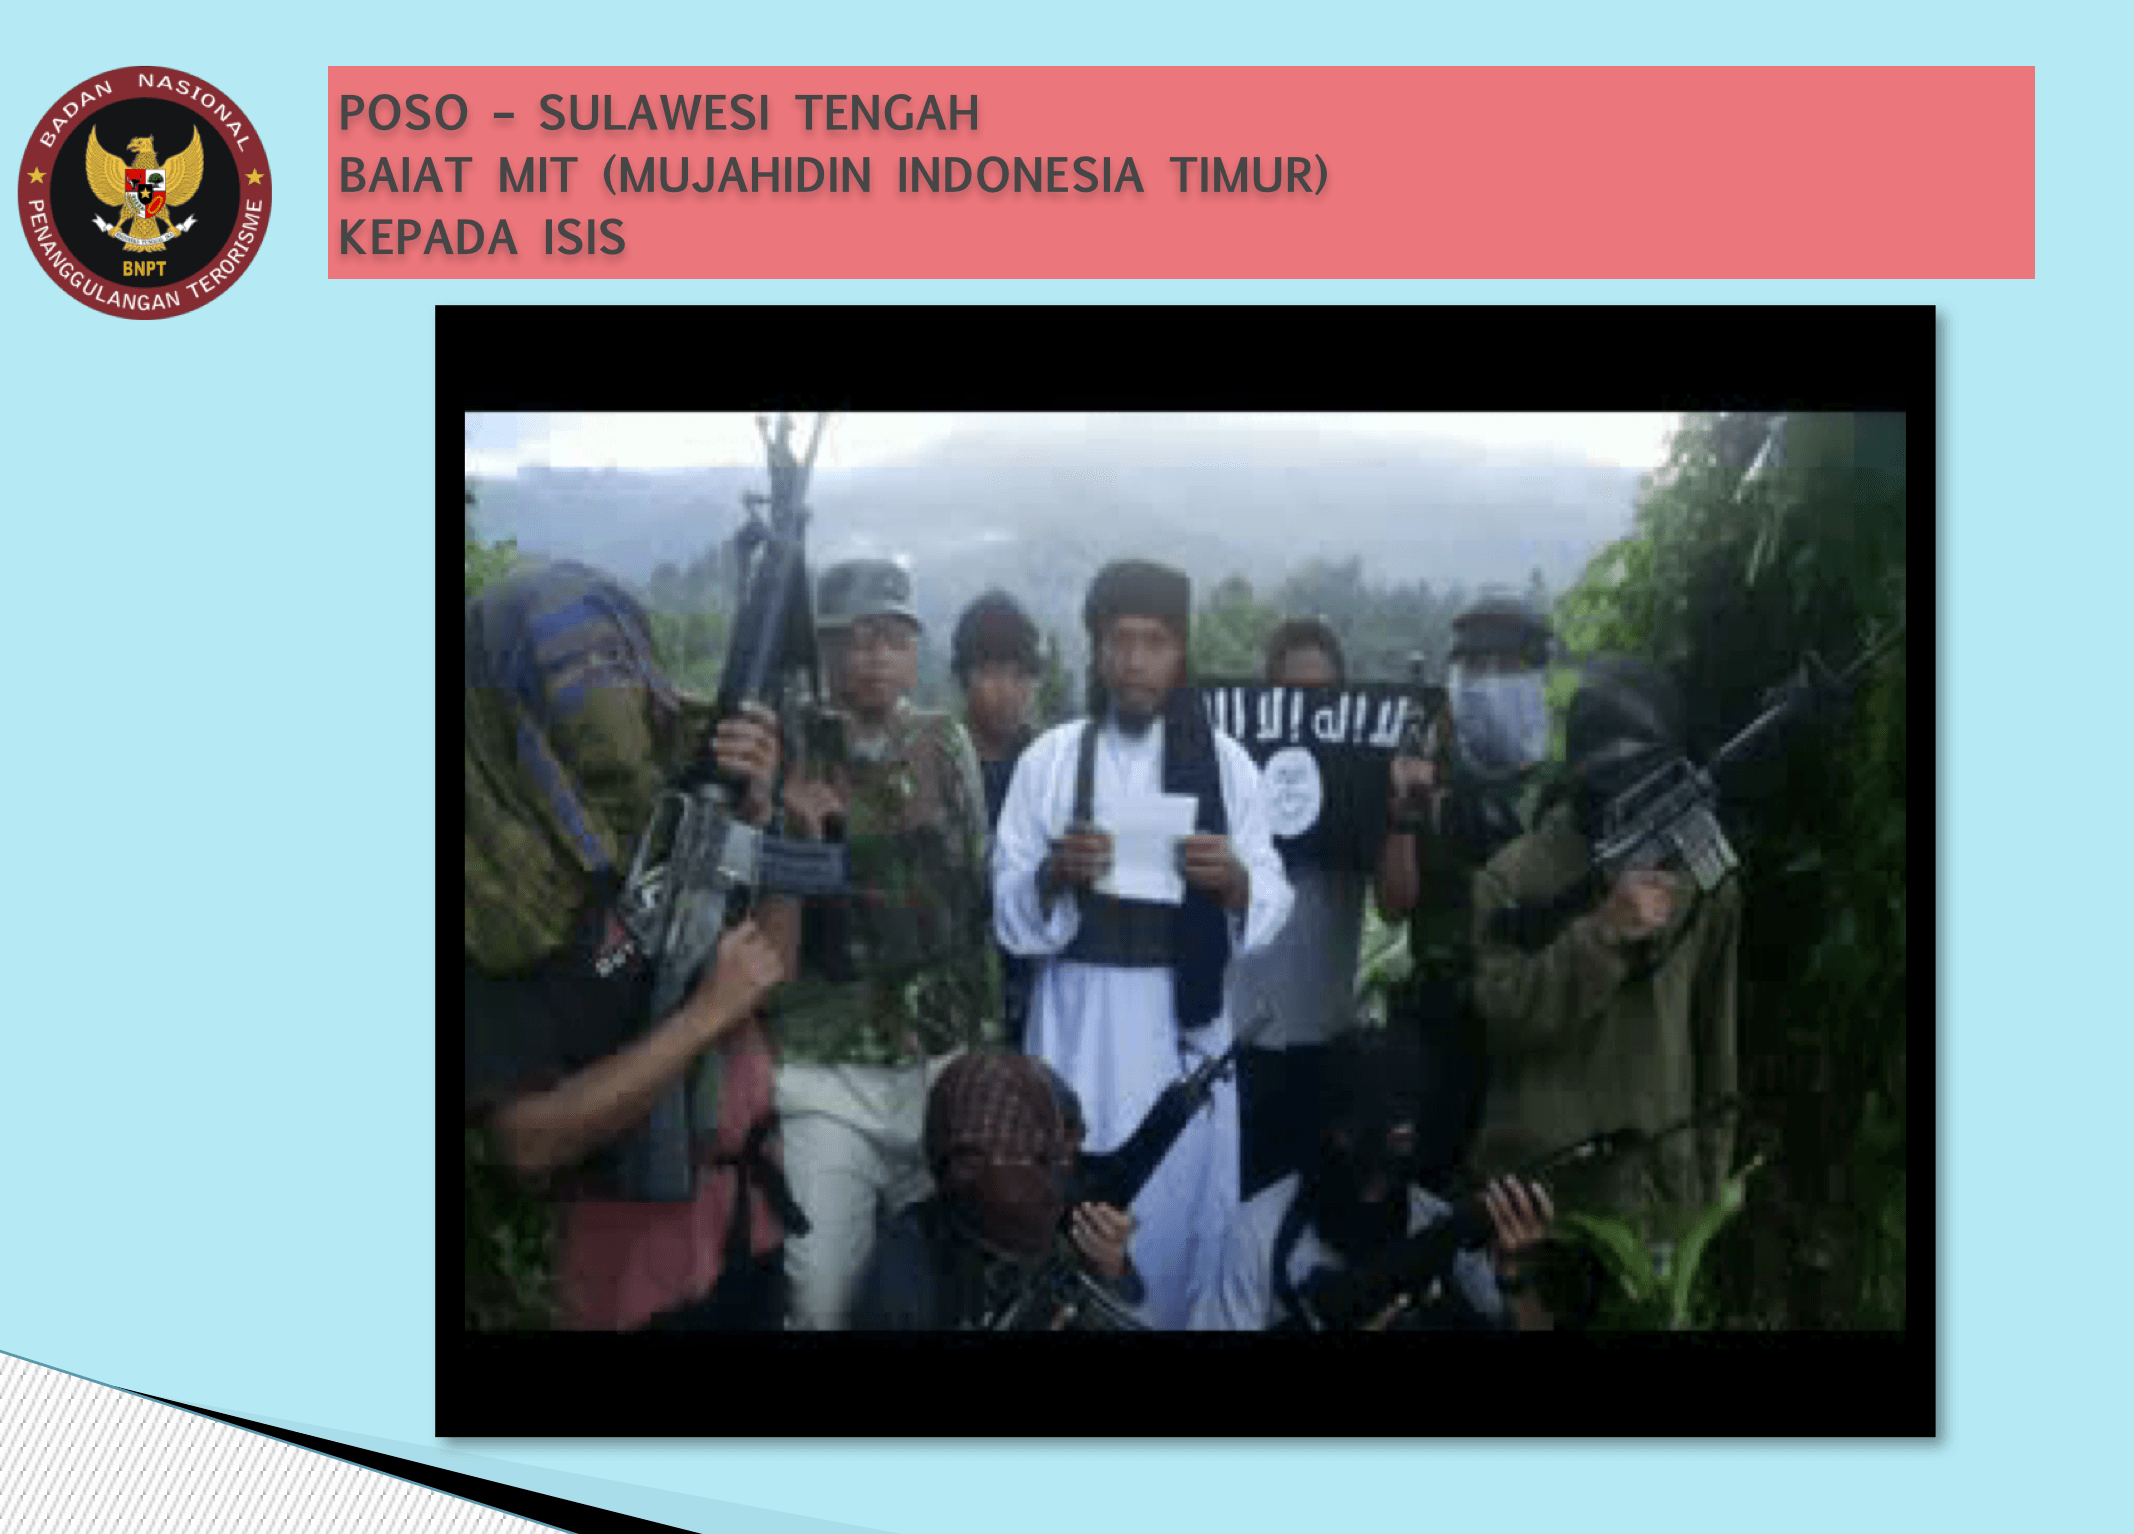 Kelompok Mujahidin Indonesia Timur dibai'at kepada ISIS. Sumber: BNPT 